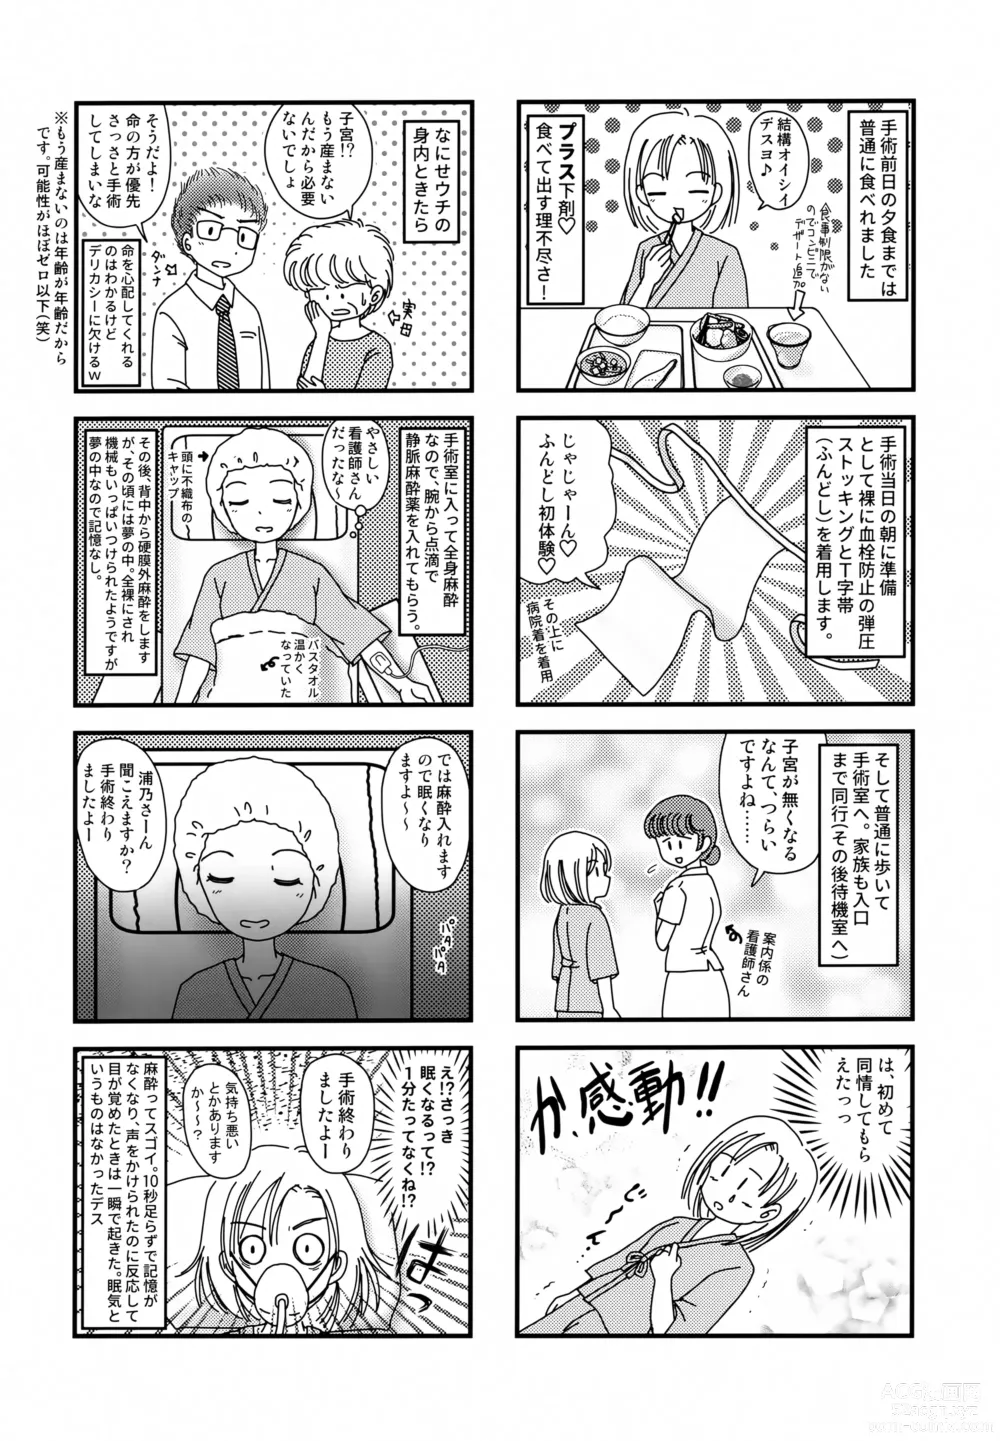 Page 21 of doujinshi Oni no Chiru Ramu